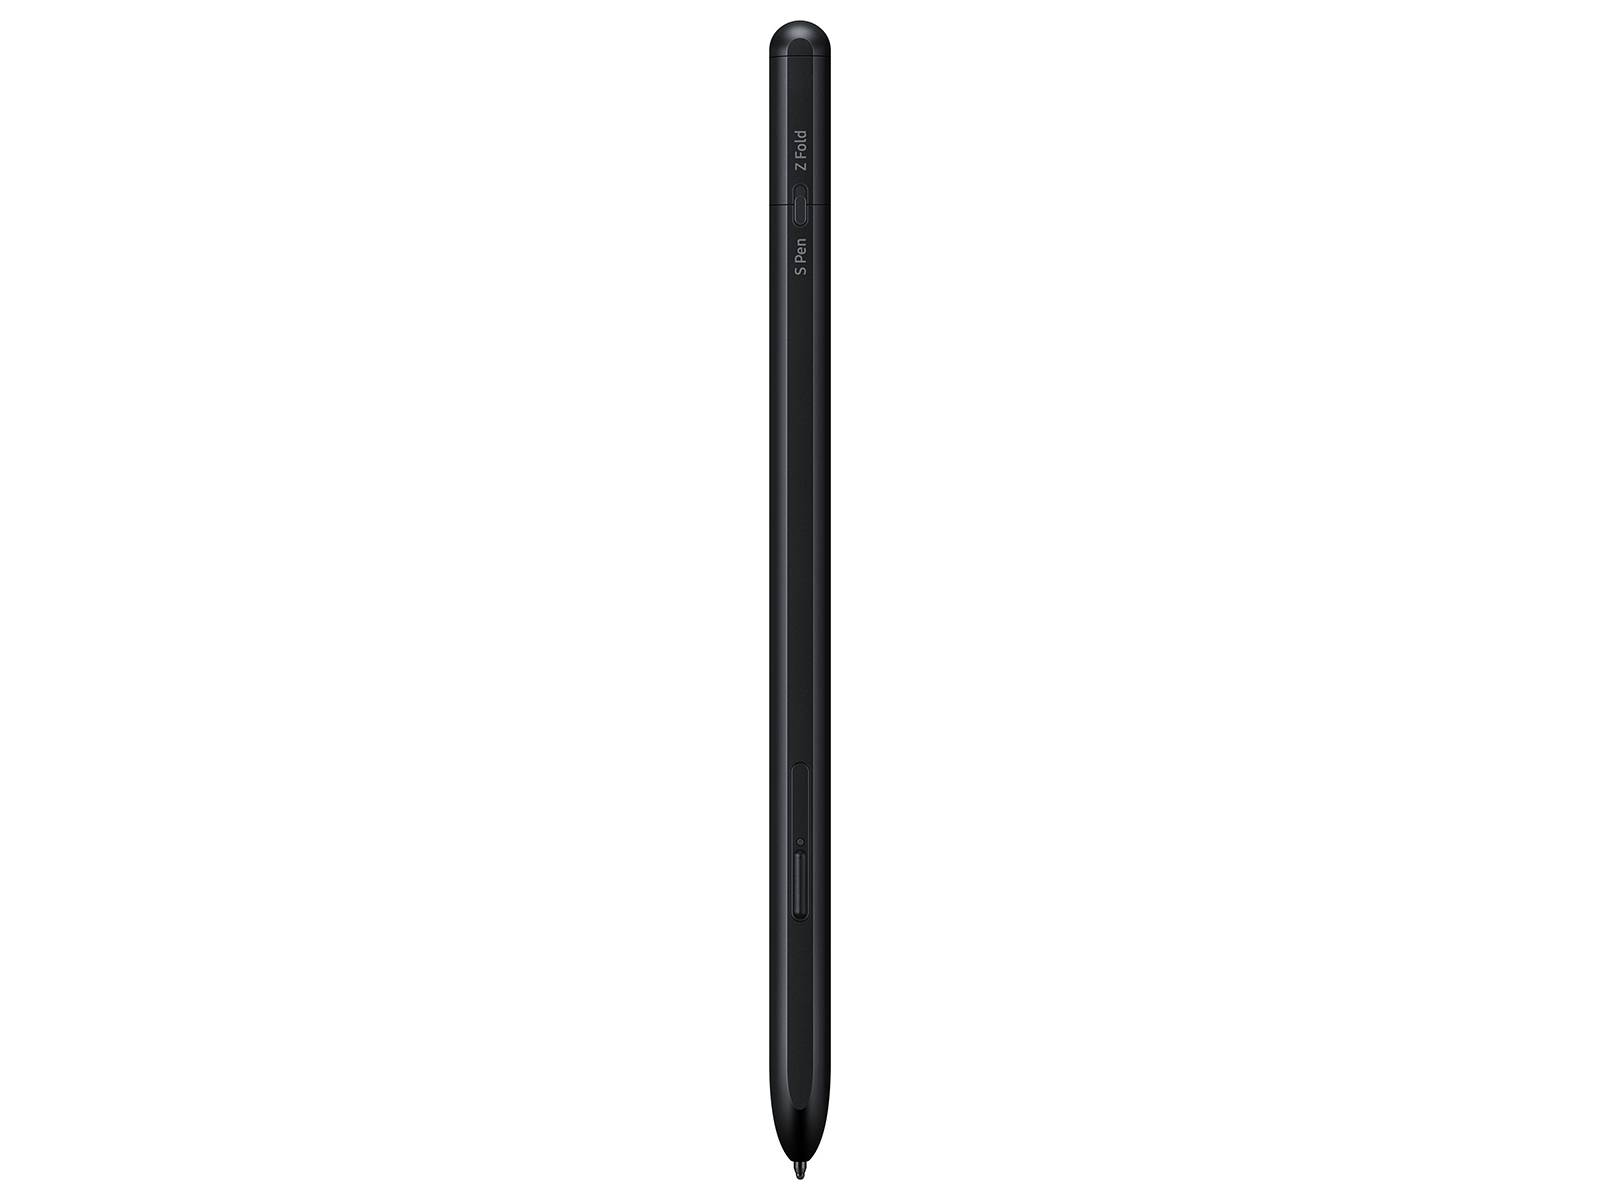 S Pen Pro, Black Mobile Accessories - EJ-P5450SBEGUS | Samsung US